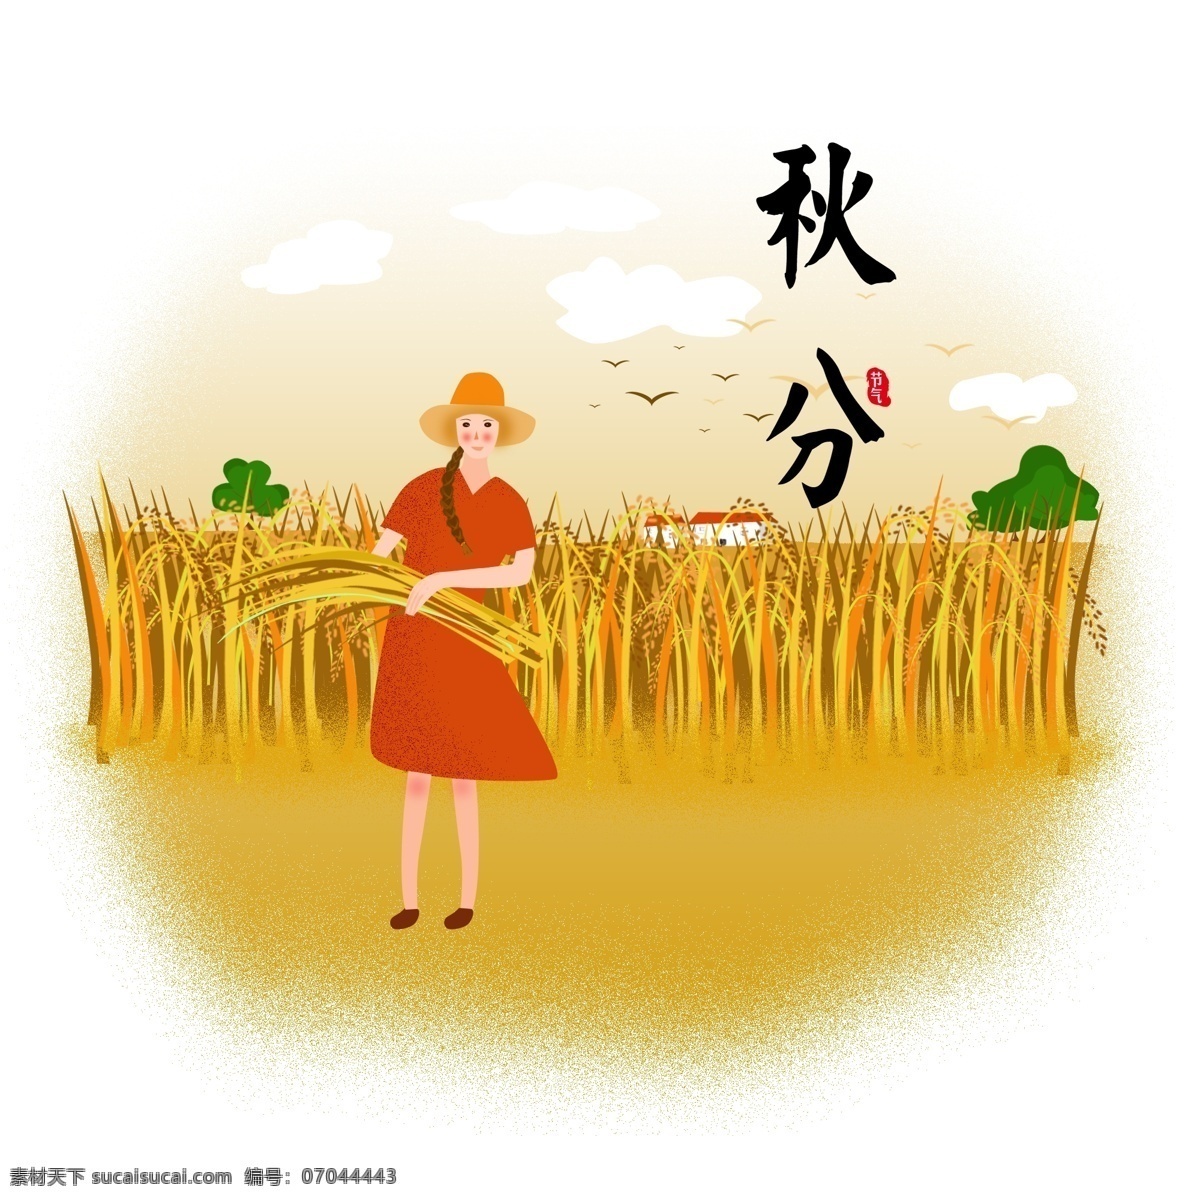 原创 秋分 稻田 黄色 手绘 风 节日 元素 稻子 女孩 云朵 橙色 节气小场景 手绘风 节气